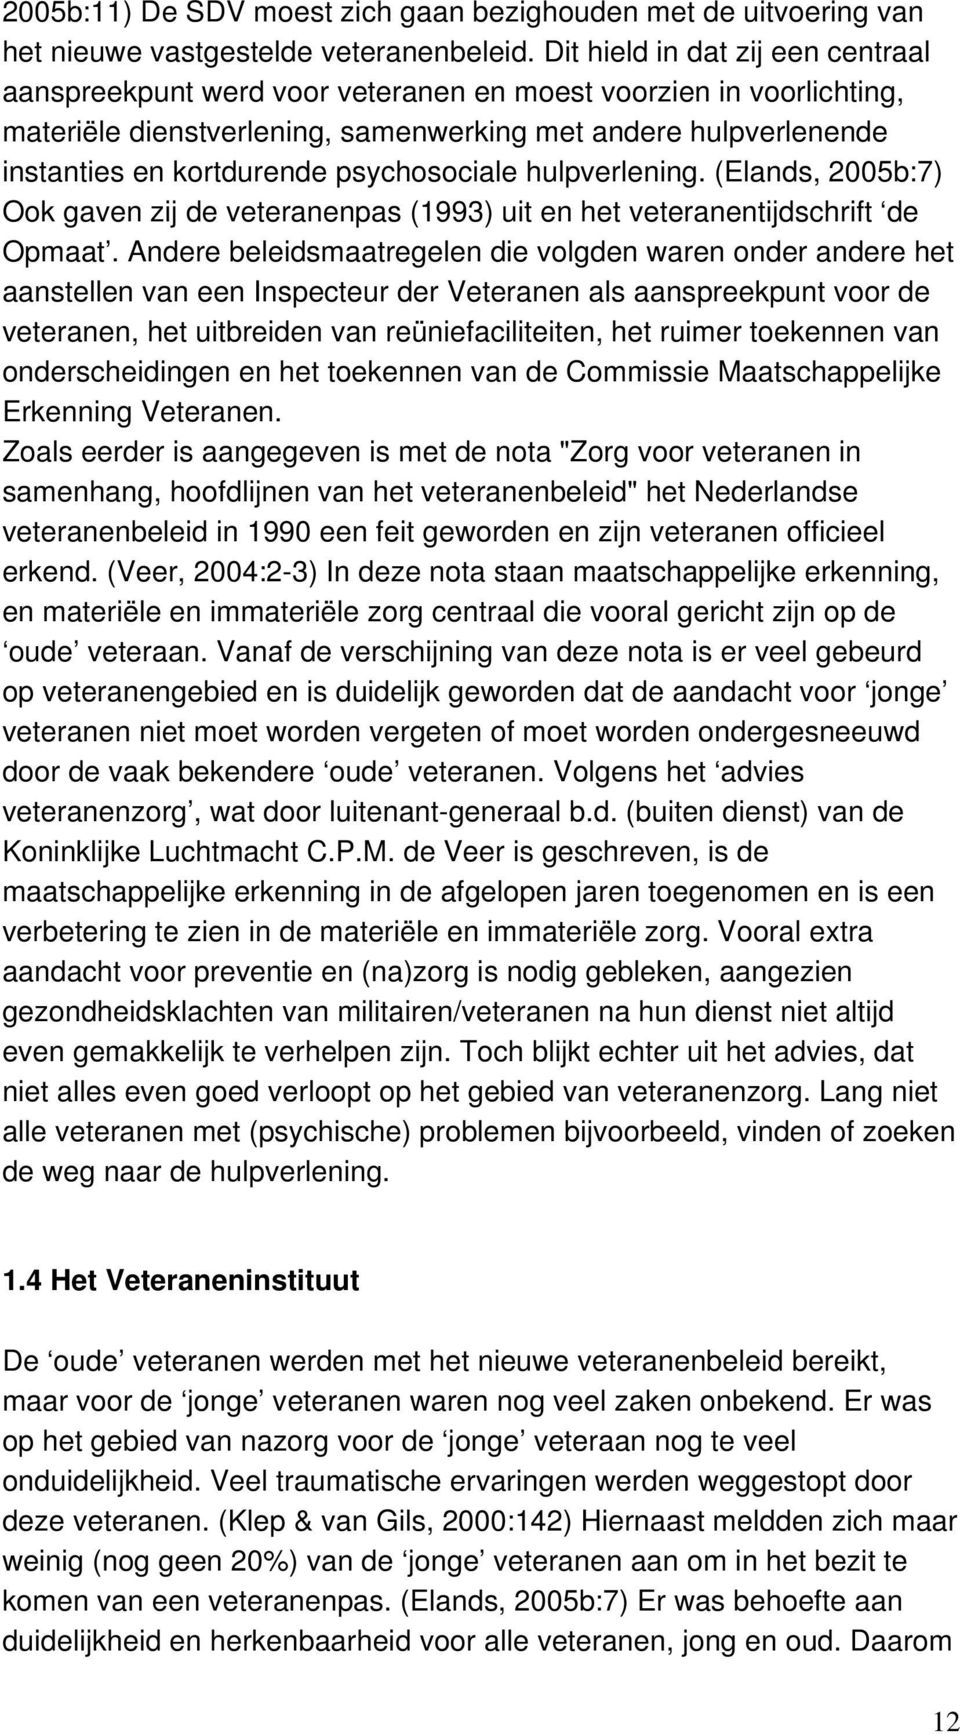 psychosociale hulpverlening. (Elands, 2005b:7) Ook gaven zij de veteranenpas (1993) uit en het veteranentijdschrift de Opmaat.